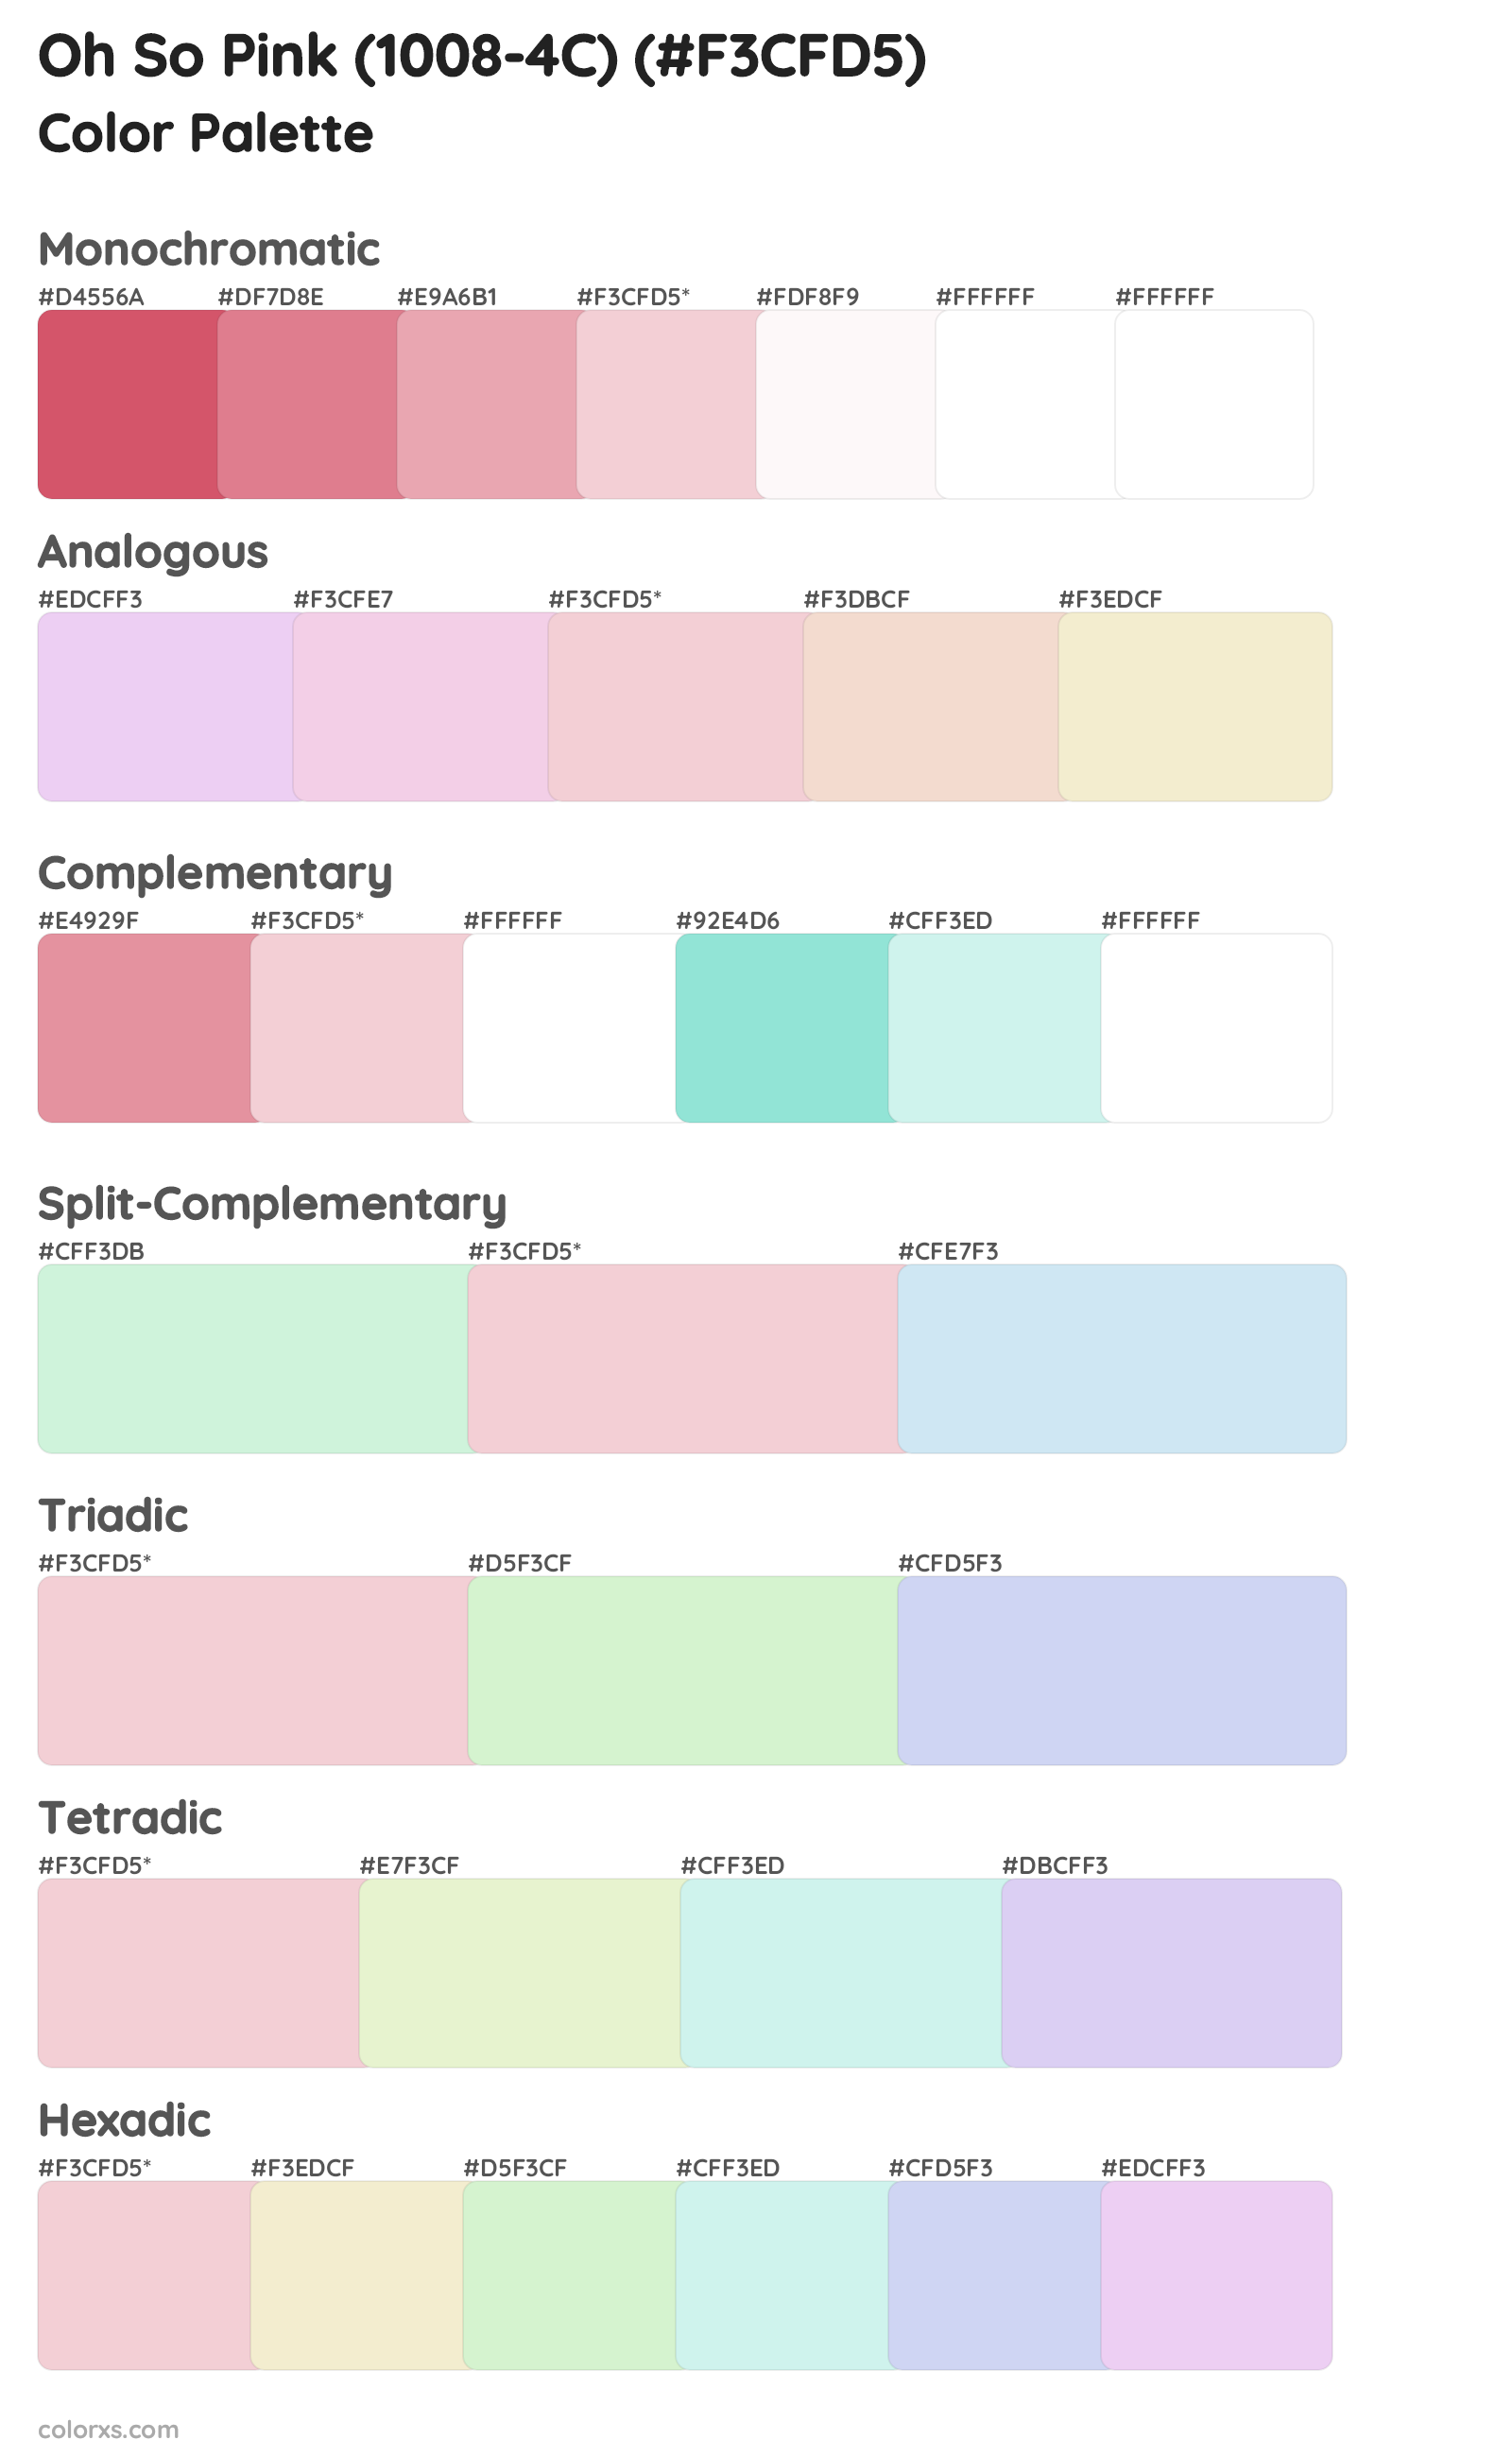 Oh So Pink (1008-4C) Color Scheme Palettes